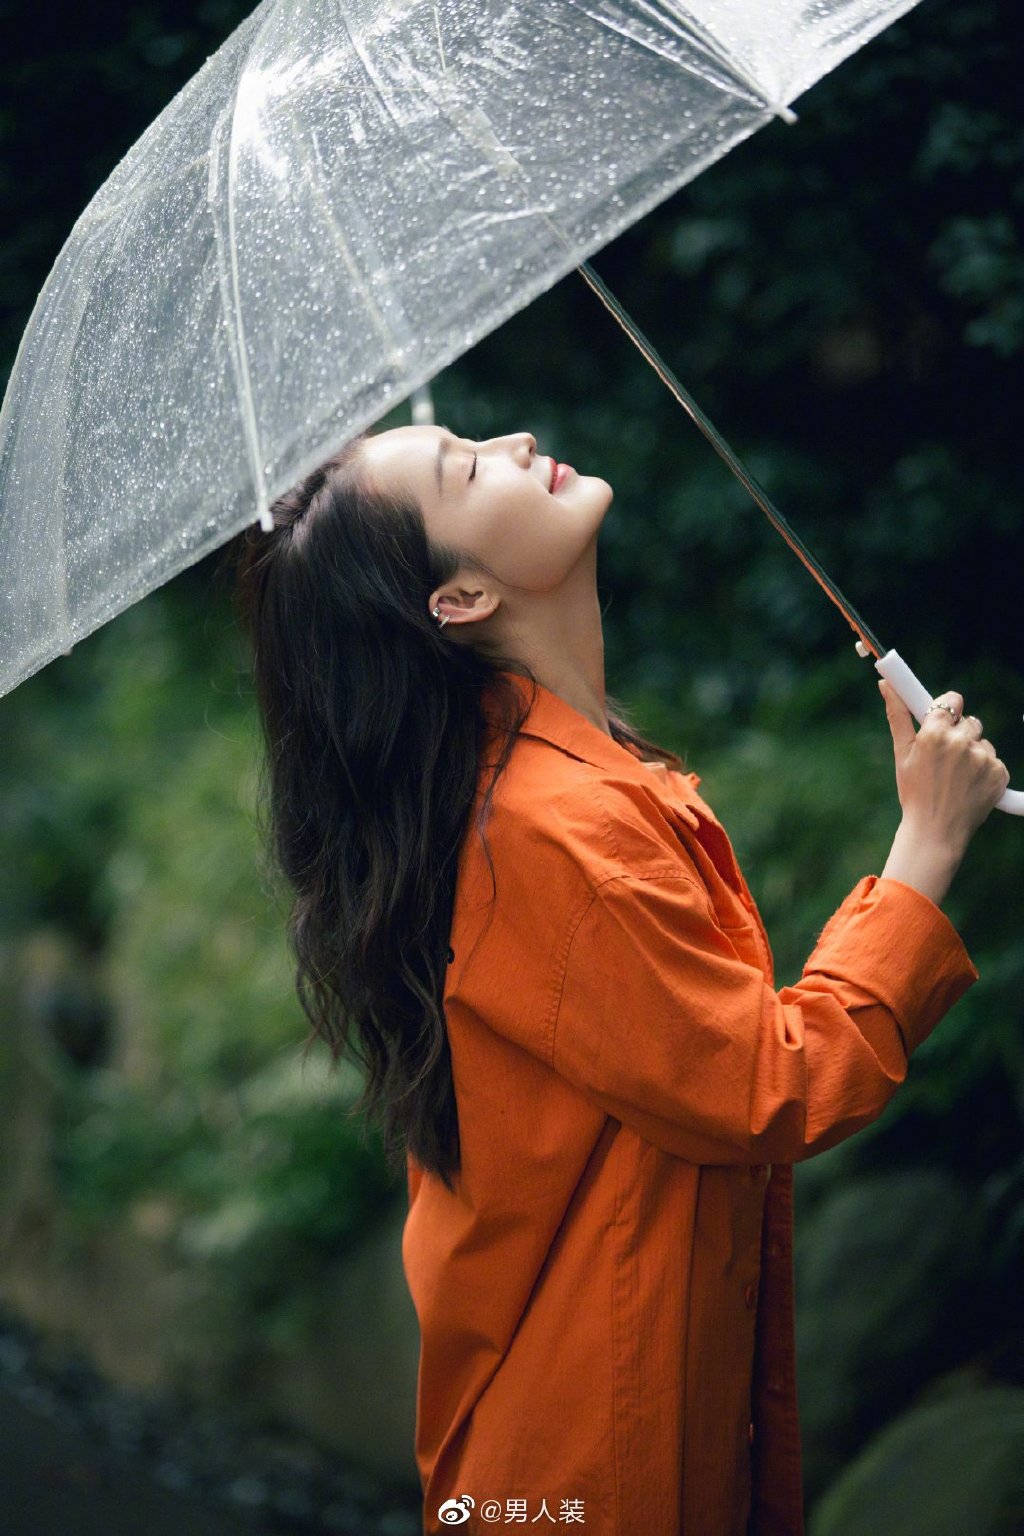 4K实拍下雨天撑伞接雨水的女性手部特写视频特效素材-千库网